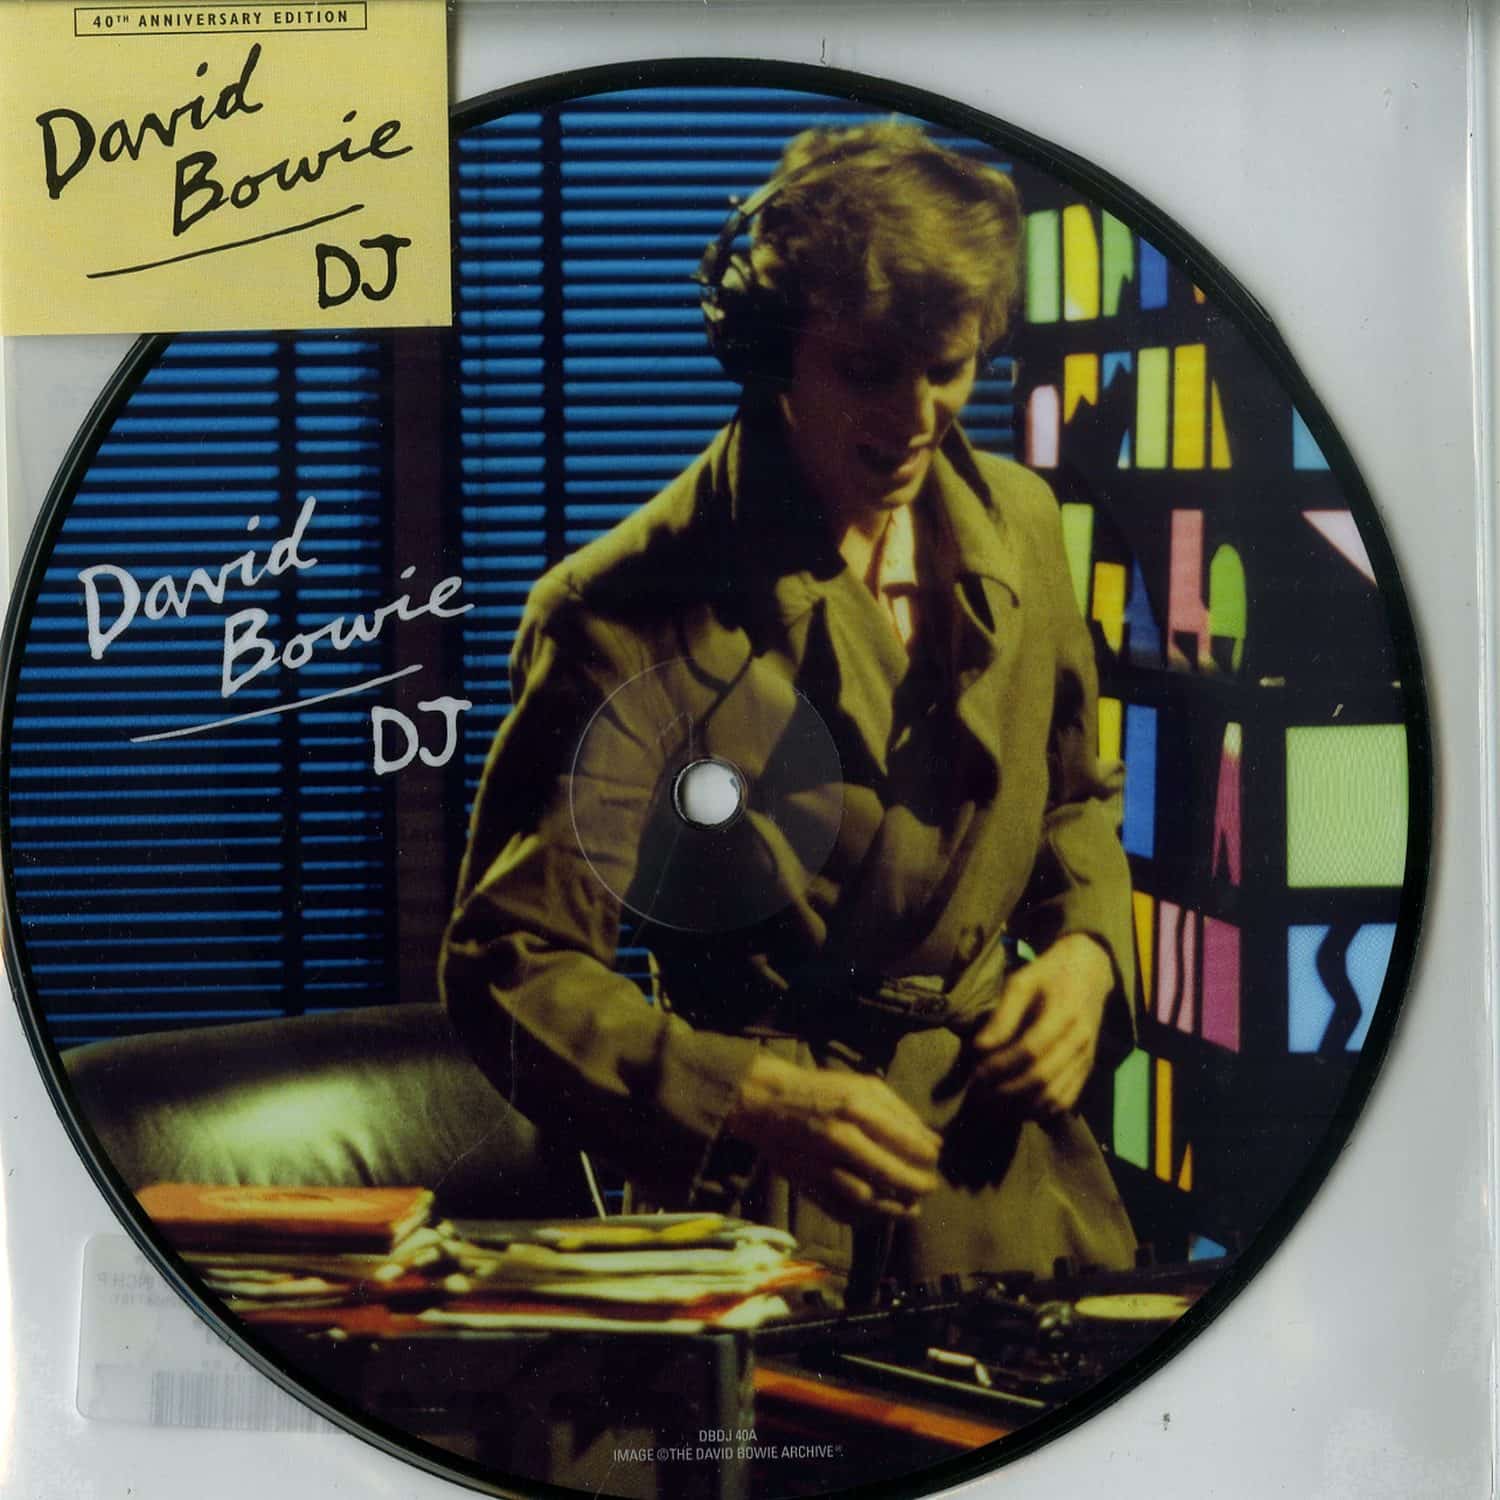 David Bowie - D.J. 